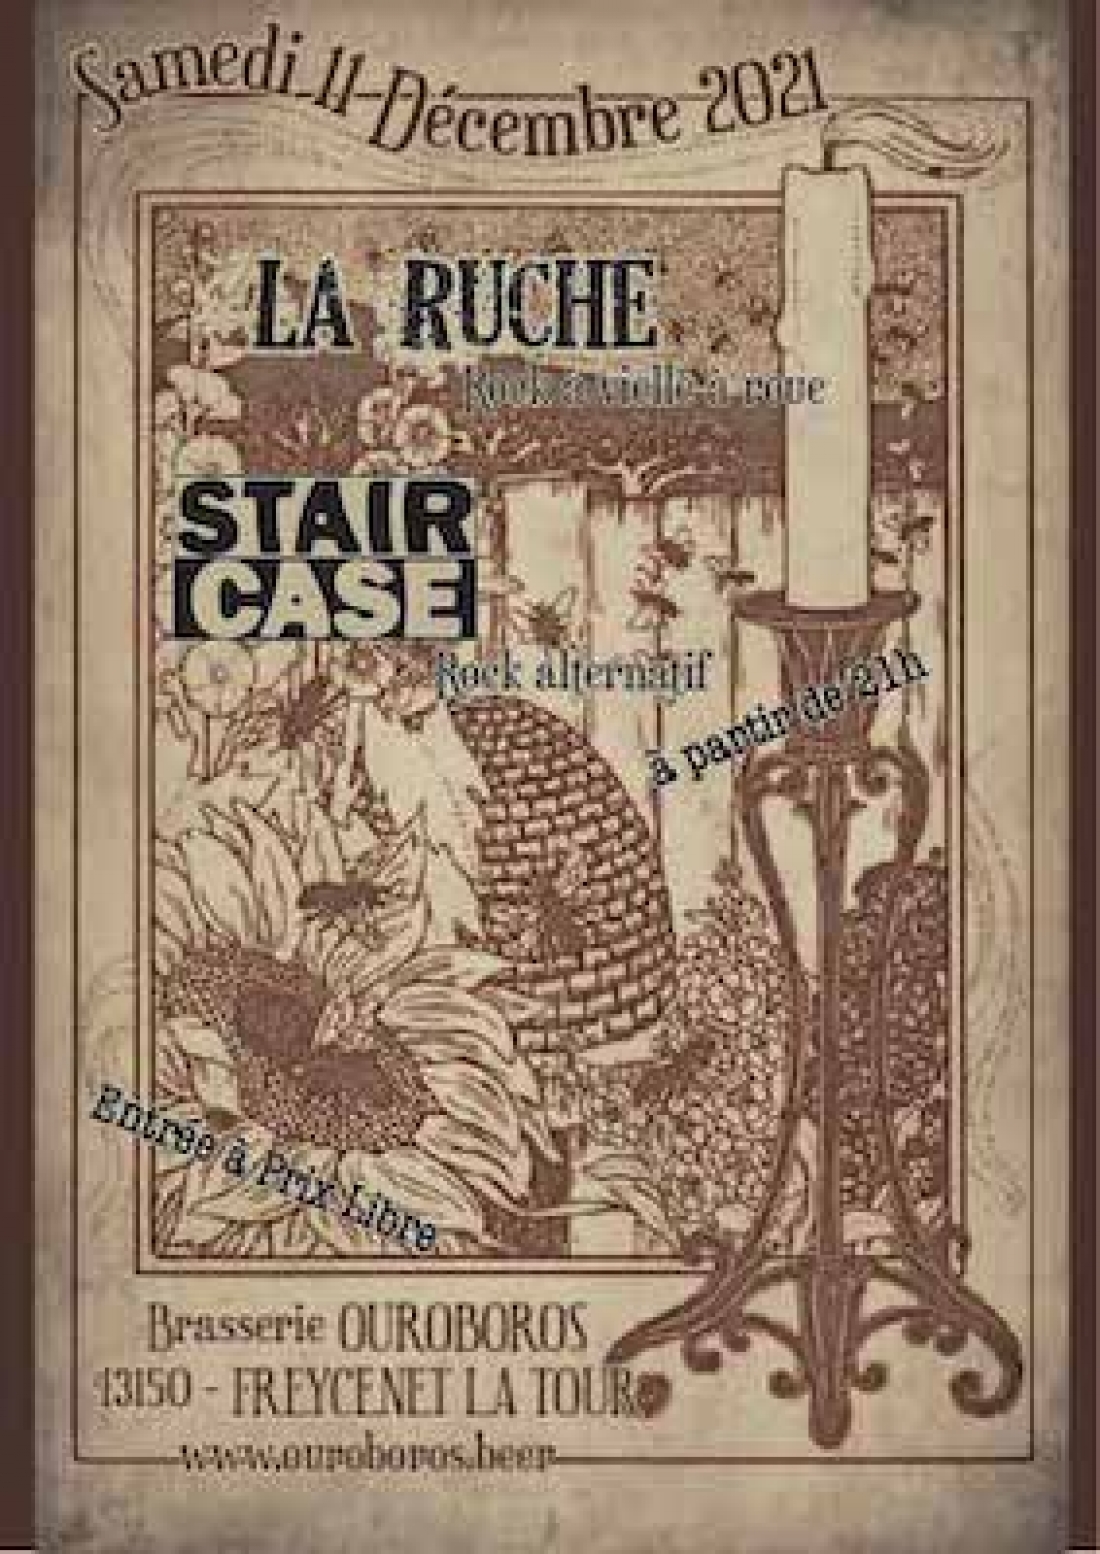 Concert La Ruche et Staircase